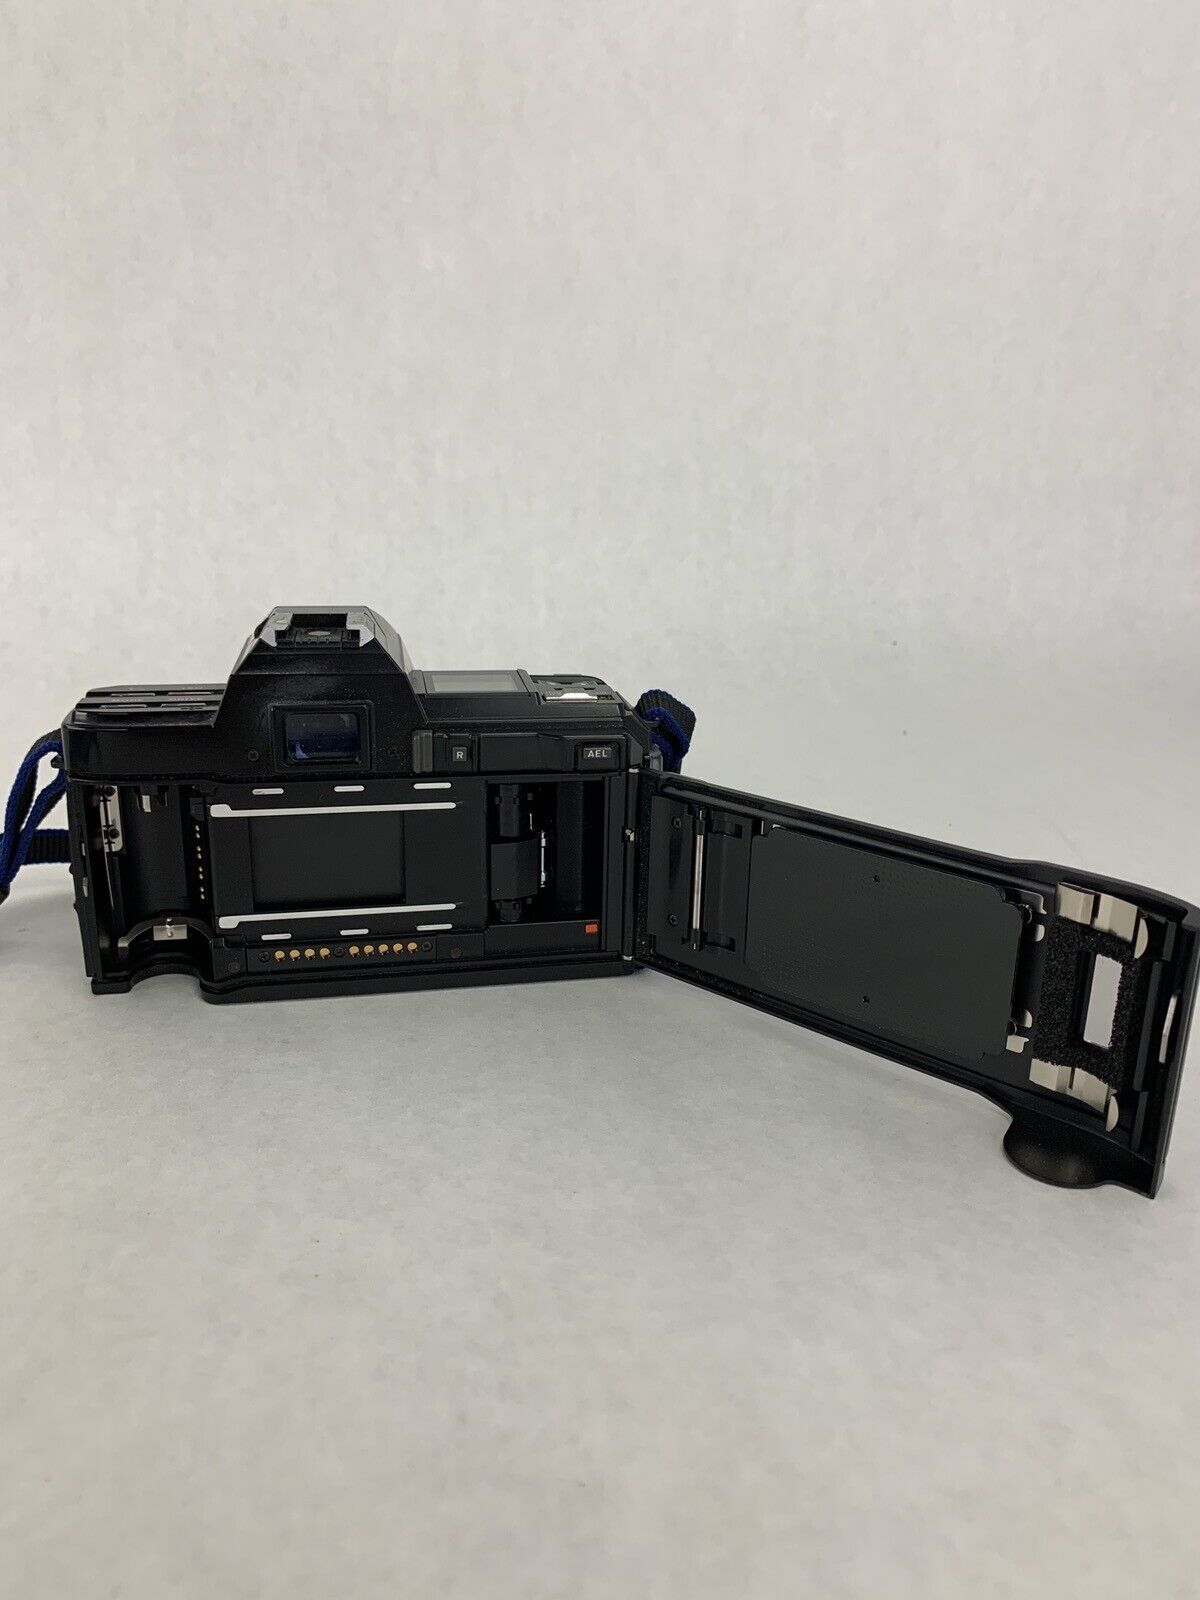 Minolta Maxxum 7000 Film Camera w/ 35-70mm AF Zoom Lens Parts and Repair